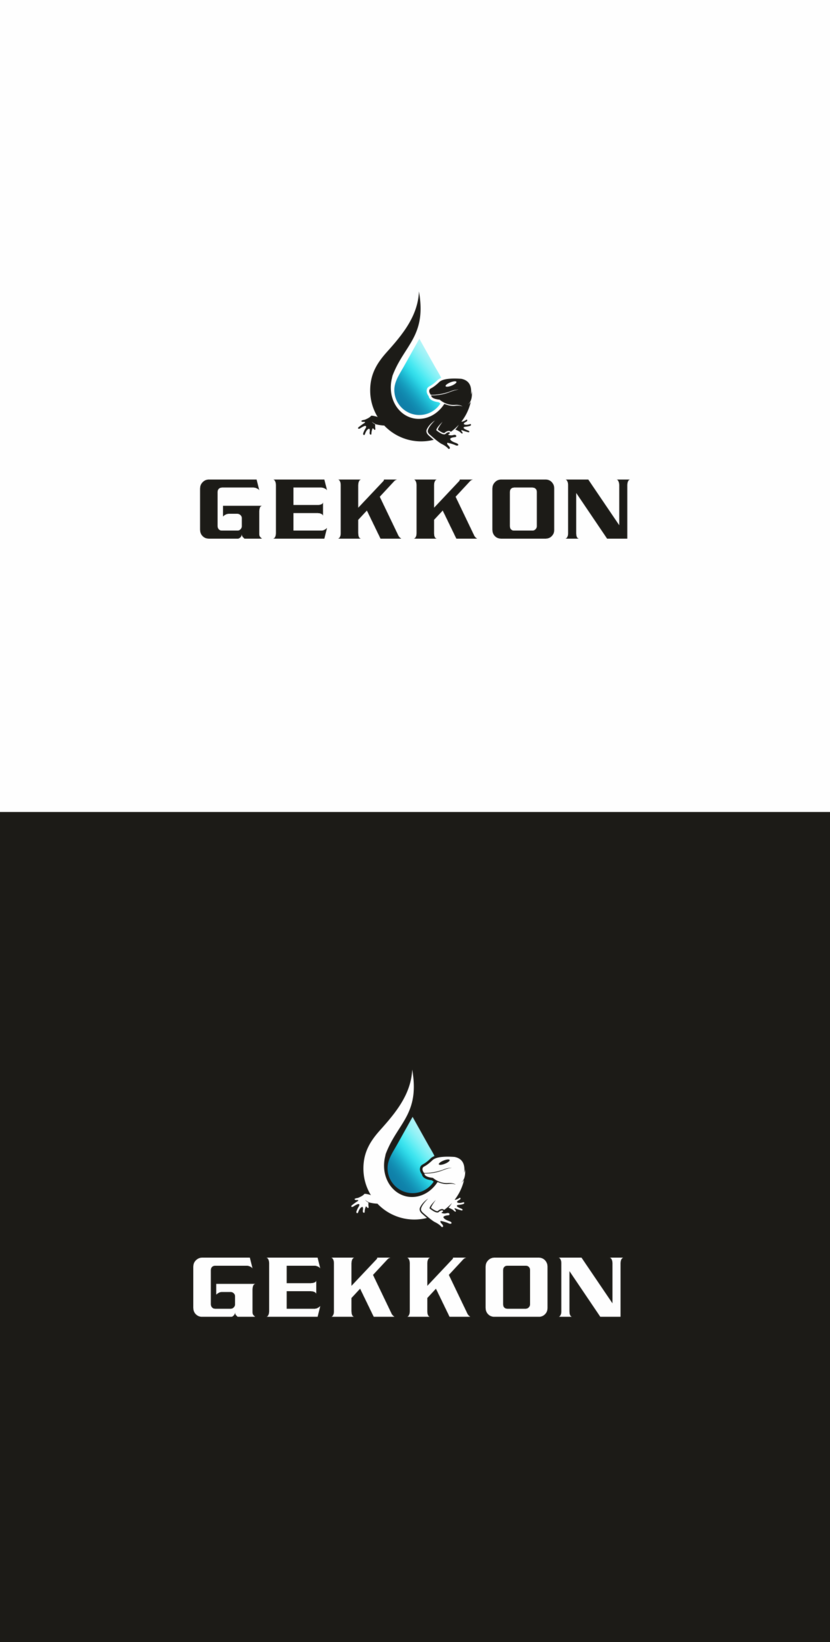 01 - Логотип для производства полиуретановых материалов марки "Gekkon"